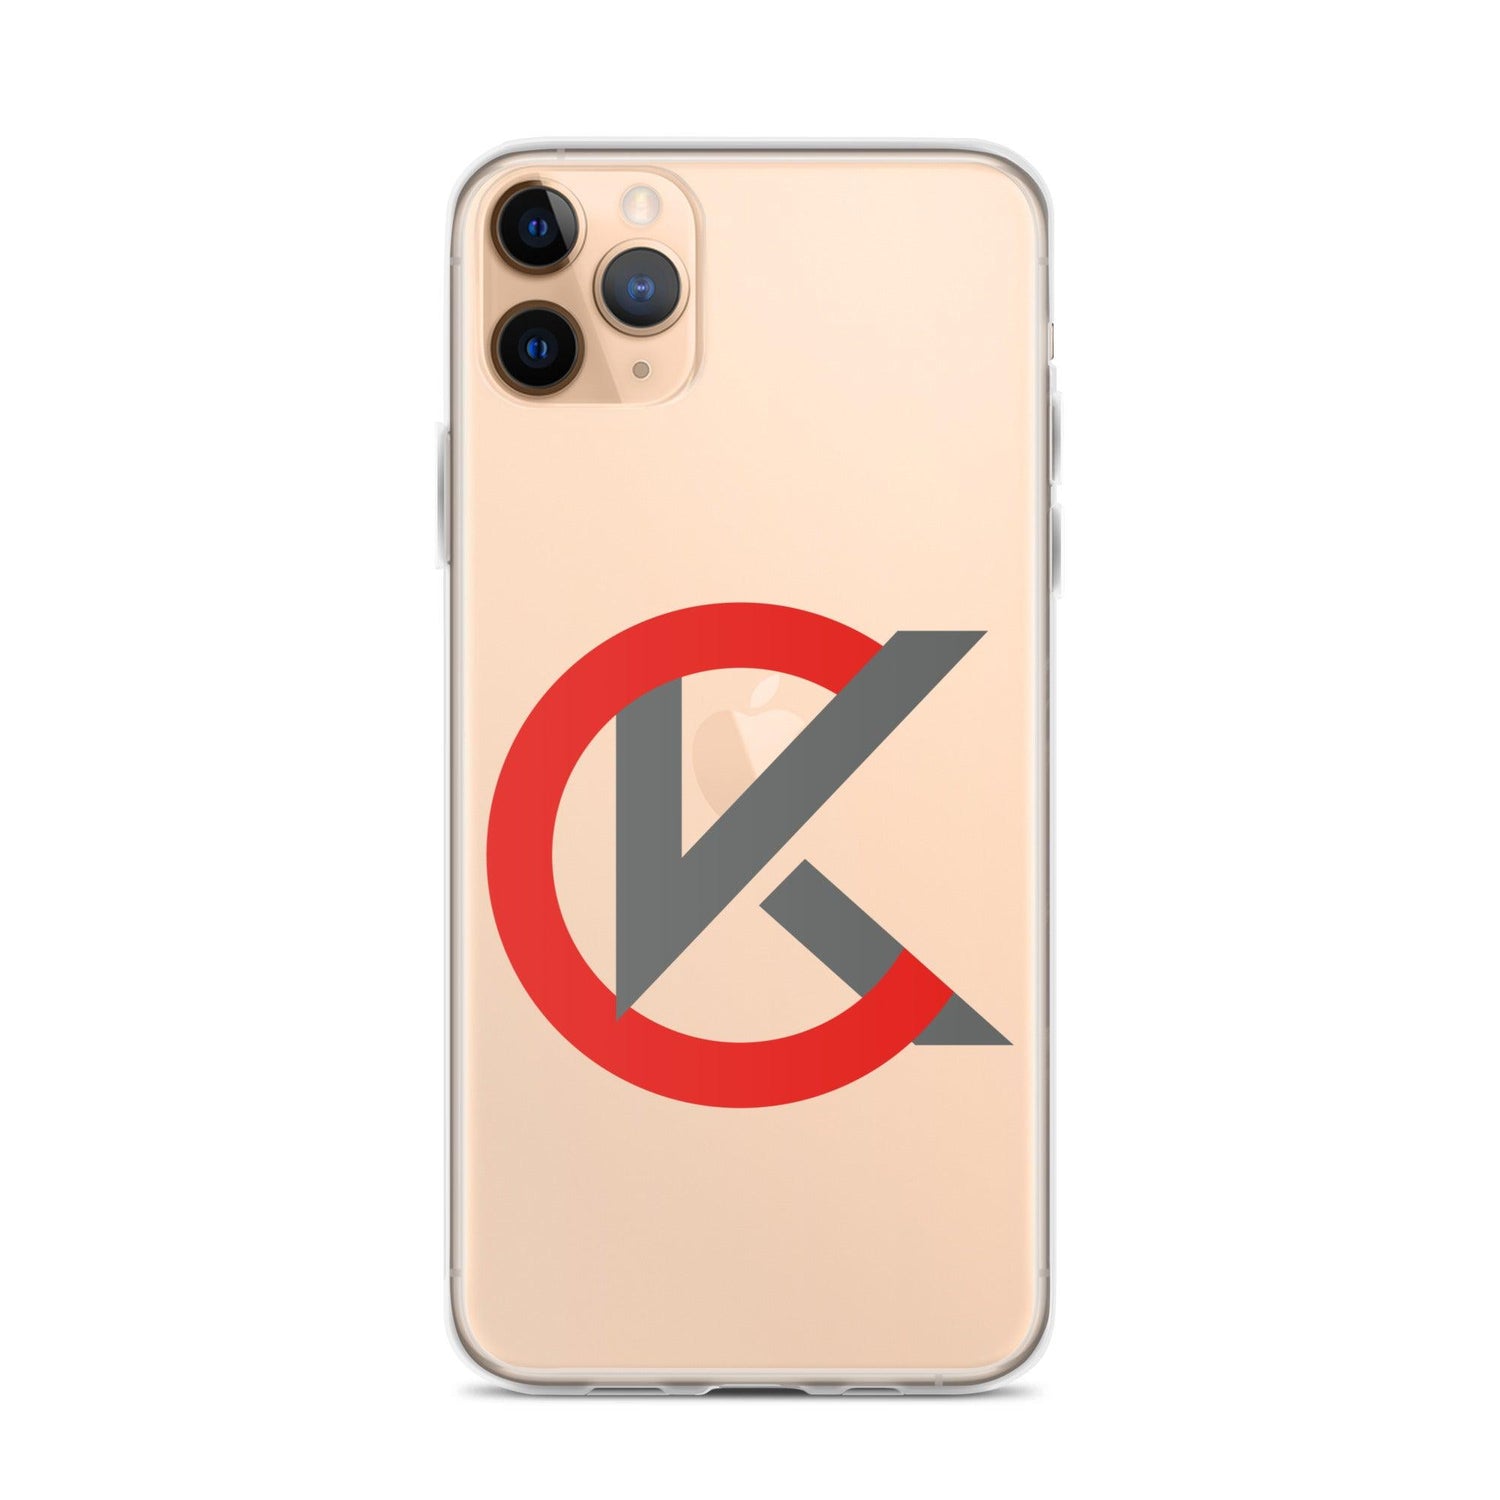 Cooper Kinney "Elite" iPhone Case - Fan Arch